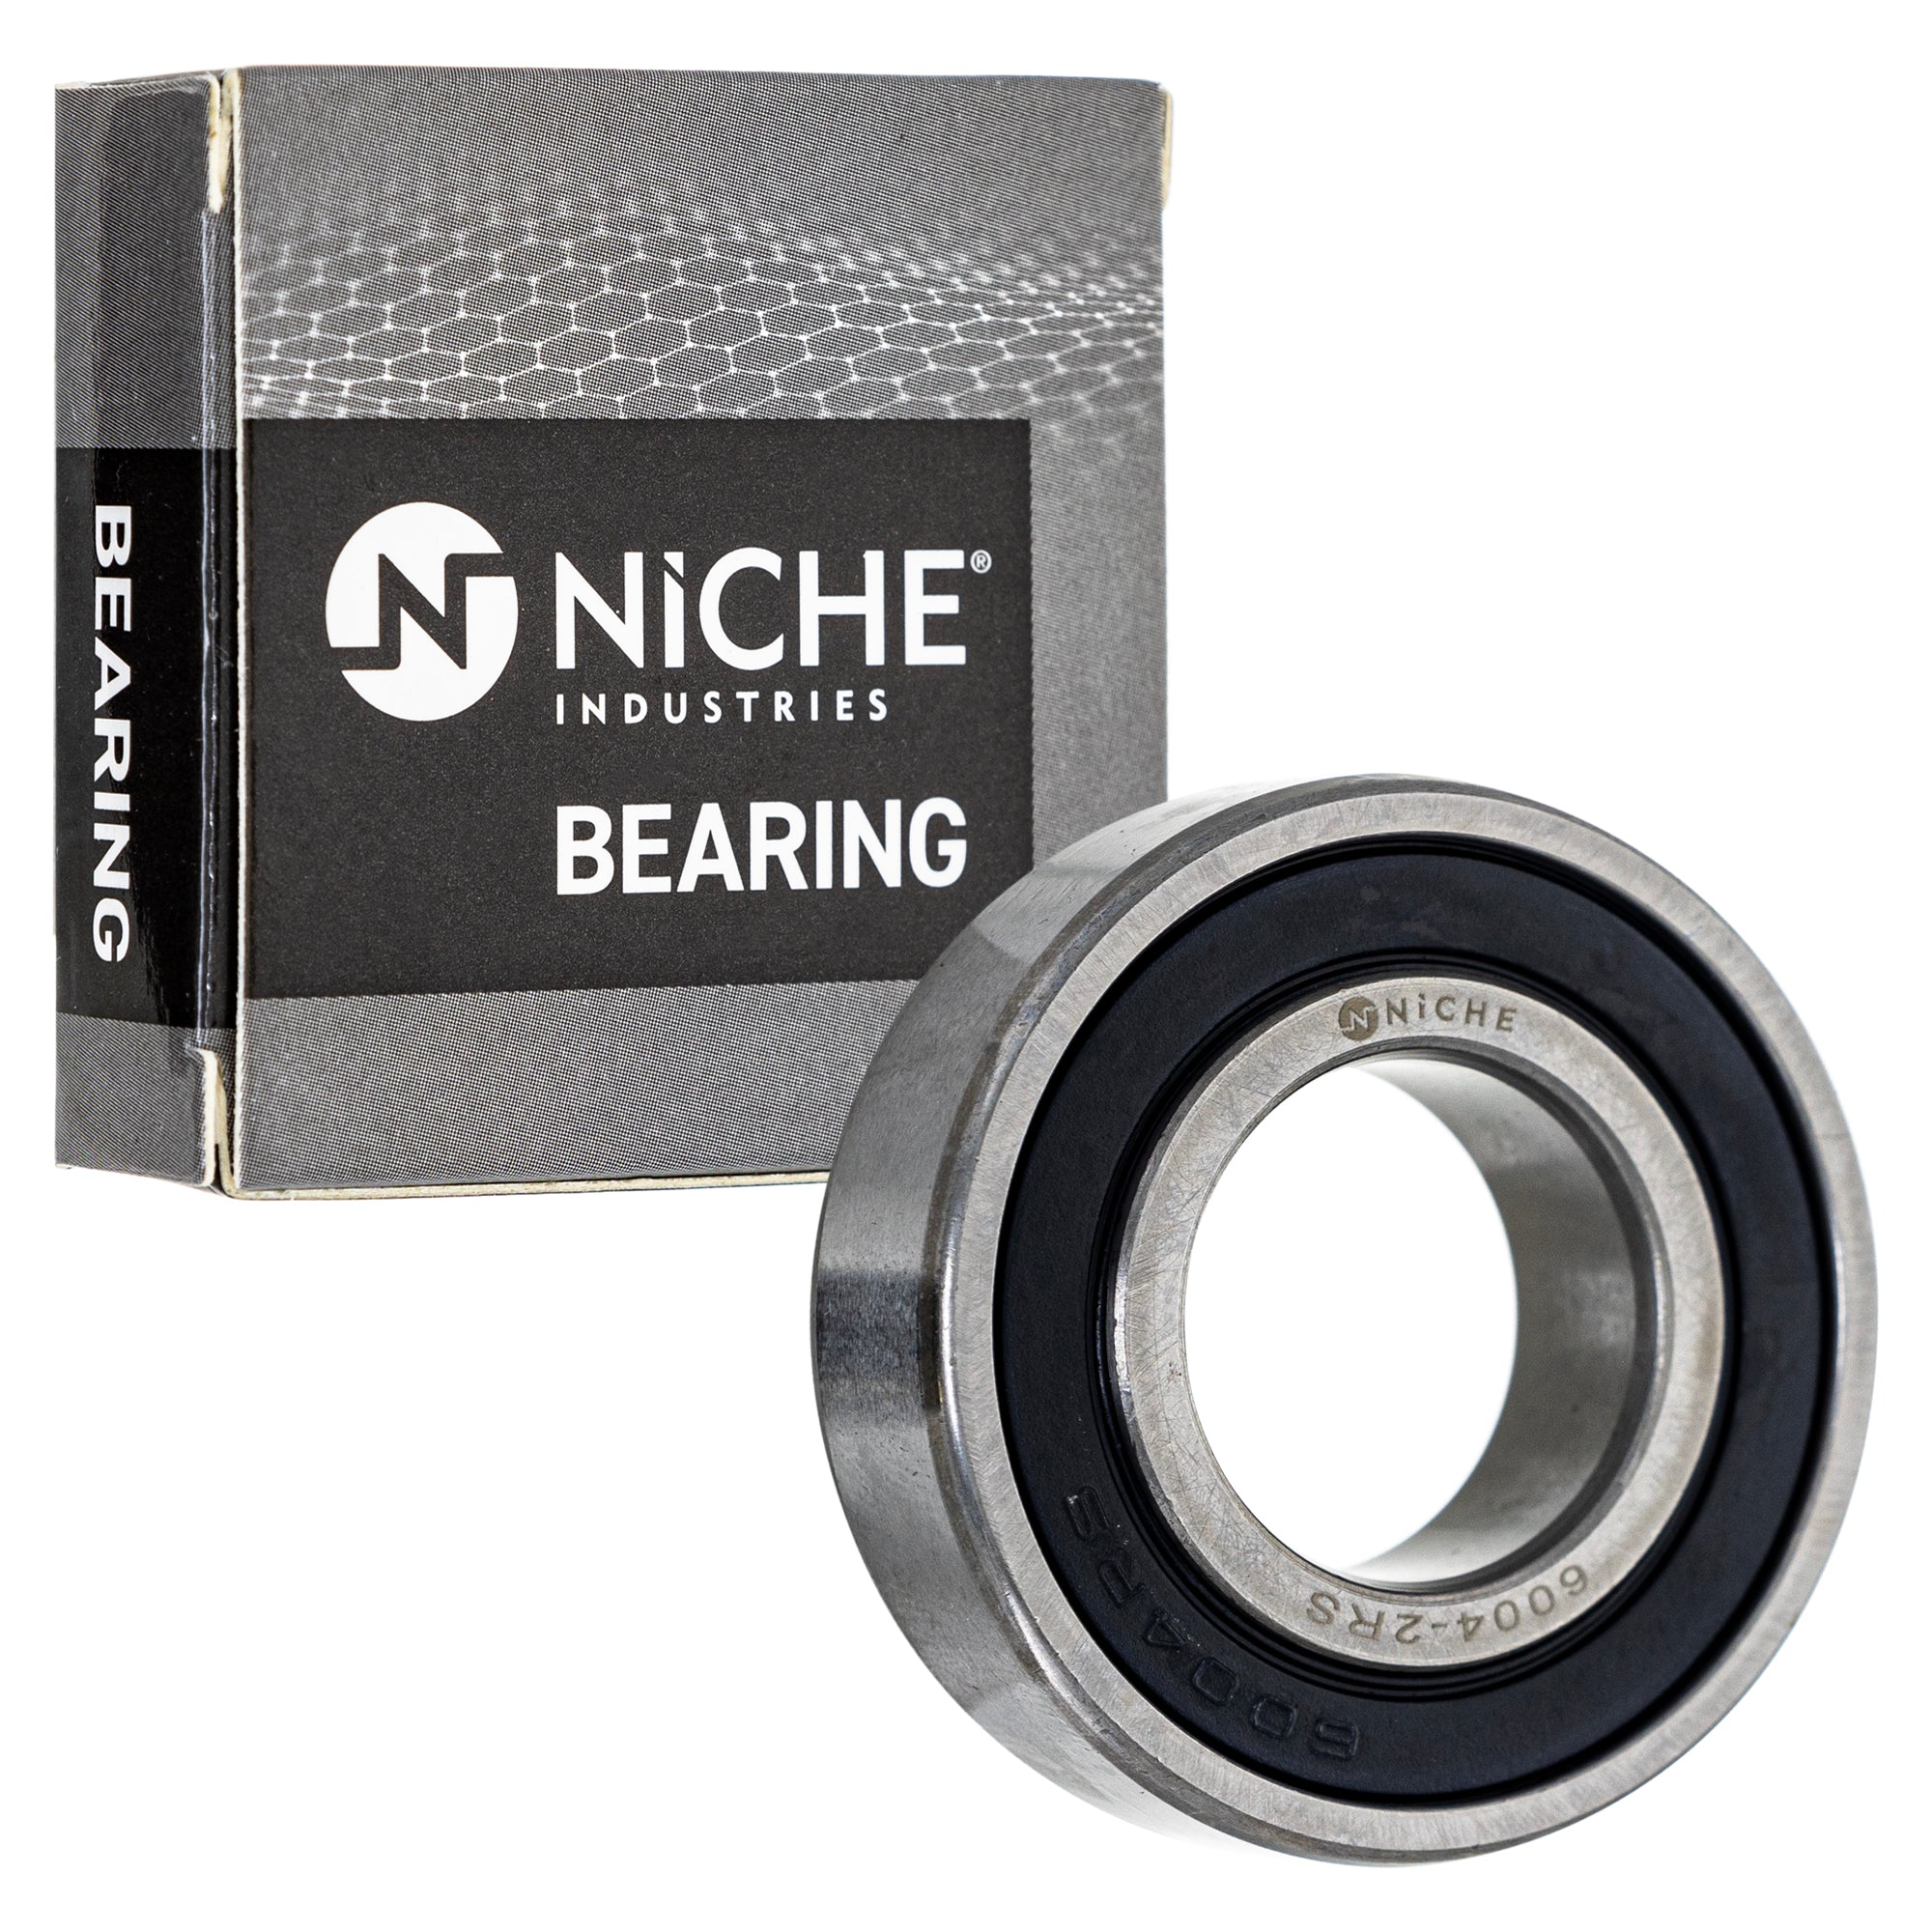 NICHE 519-CBB2225R Bearing & Seal Kit for zOTHER Toro Exmark Polaris